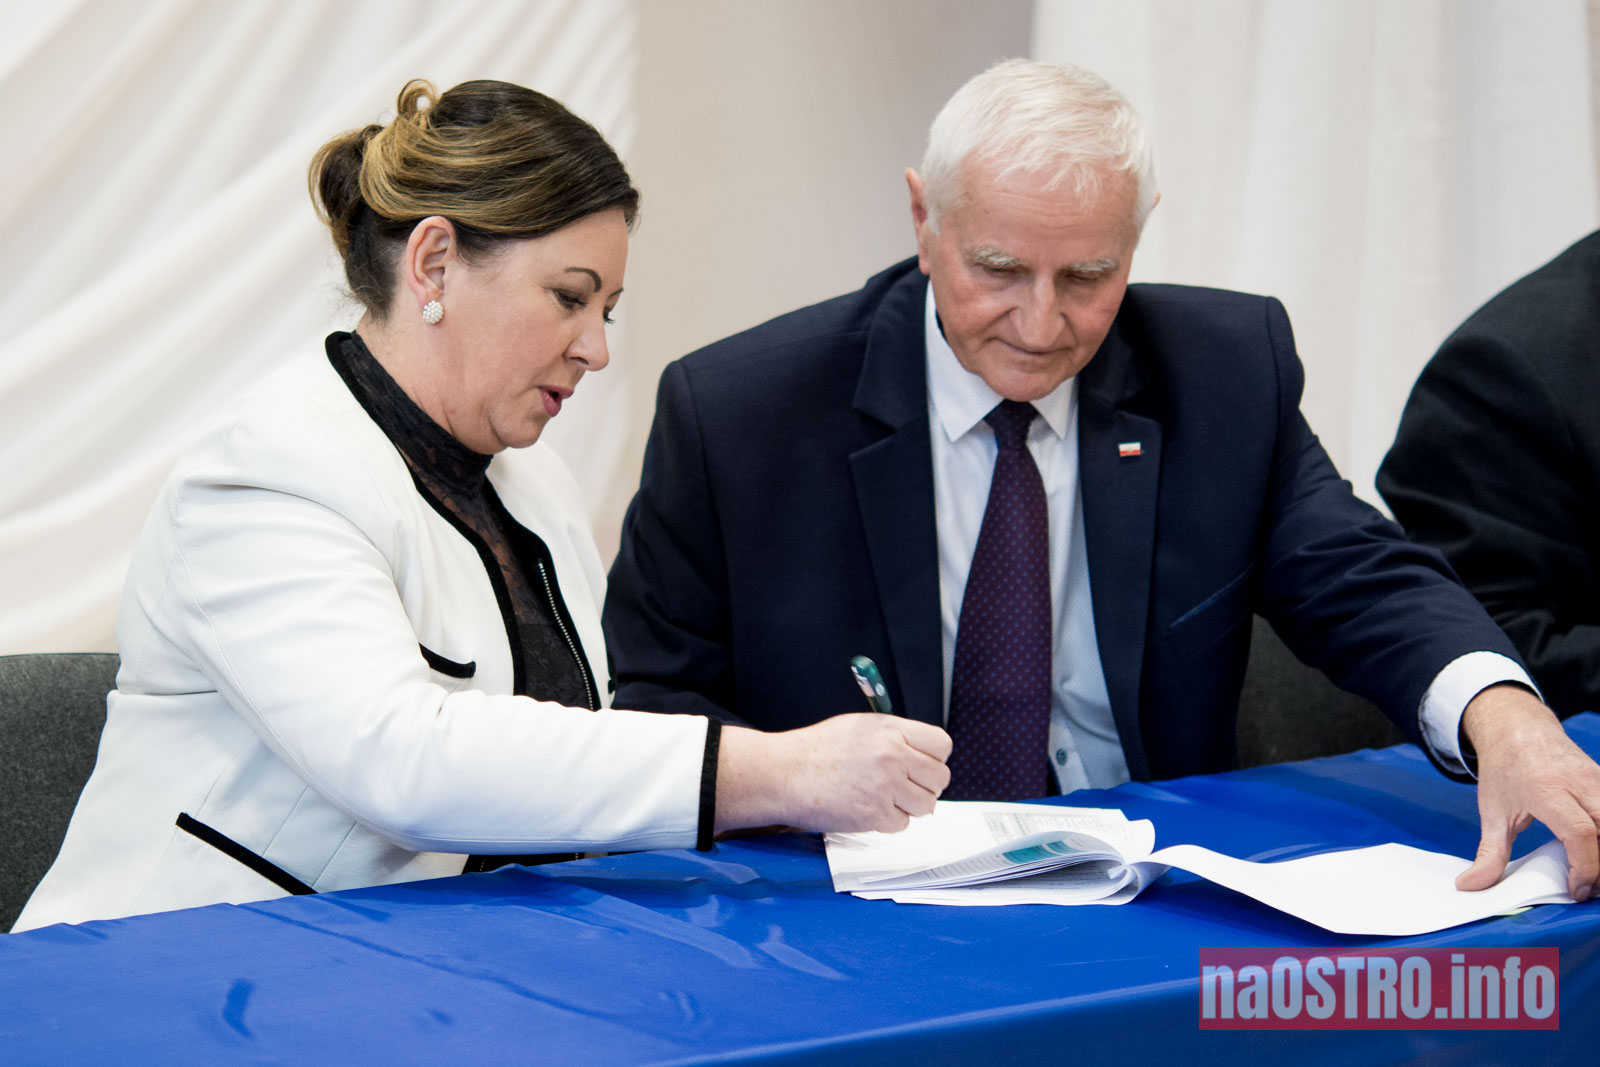 NaOSTROinfo Podpisanie umów na budowę wiejskich świetlic Bałtów 2021-17